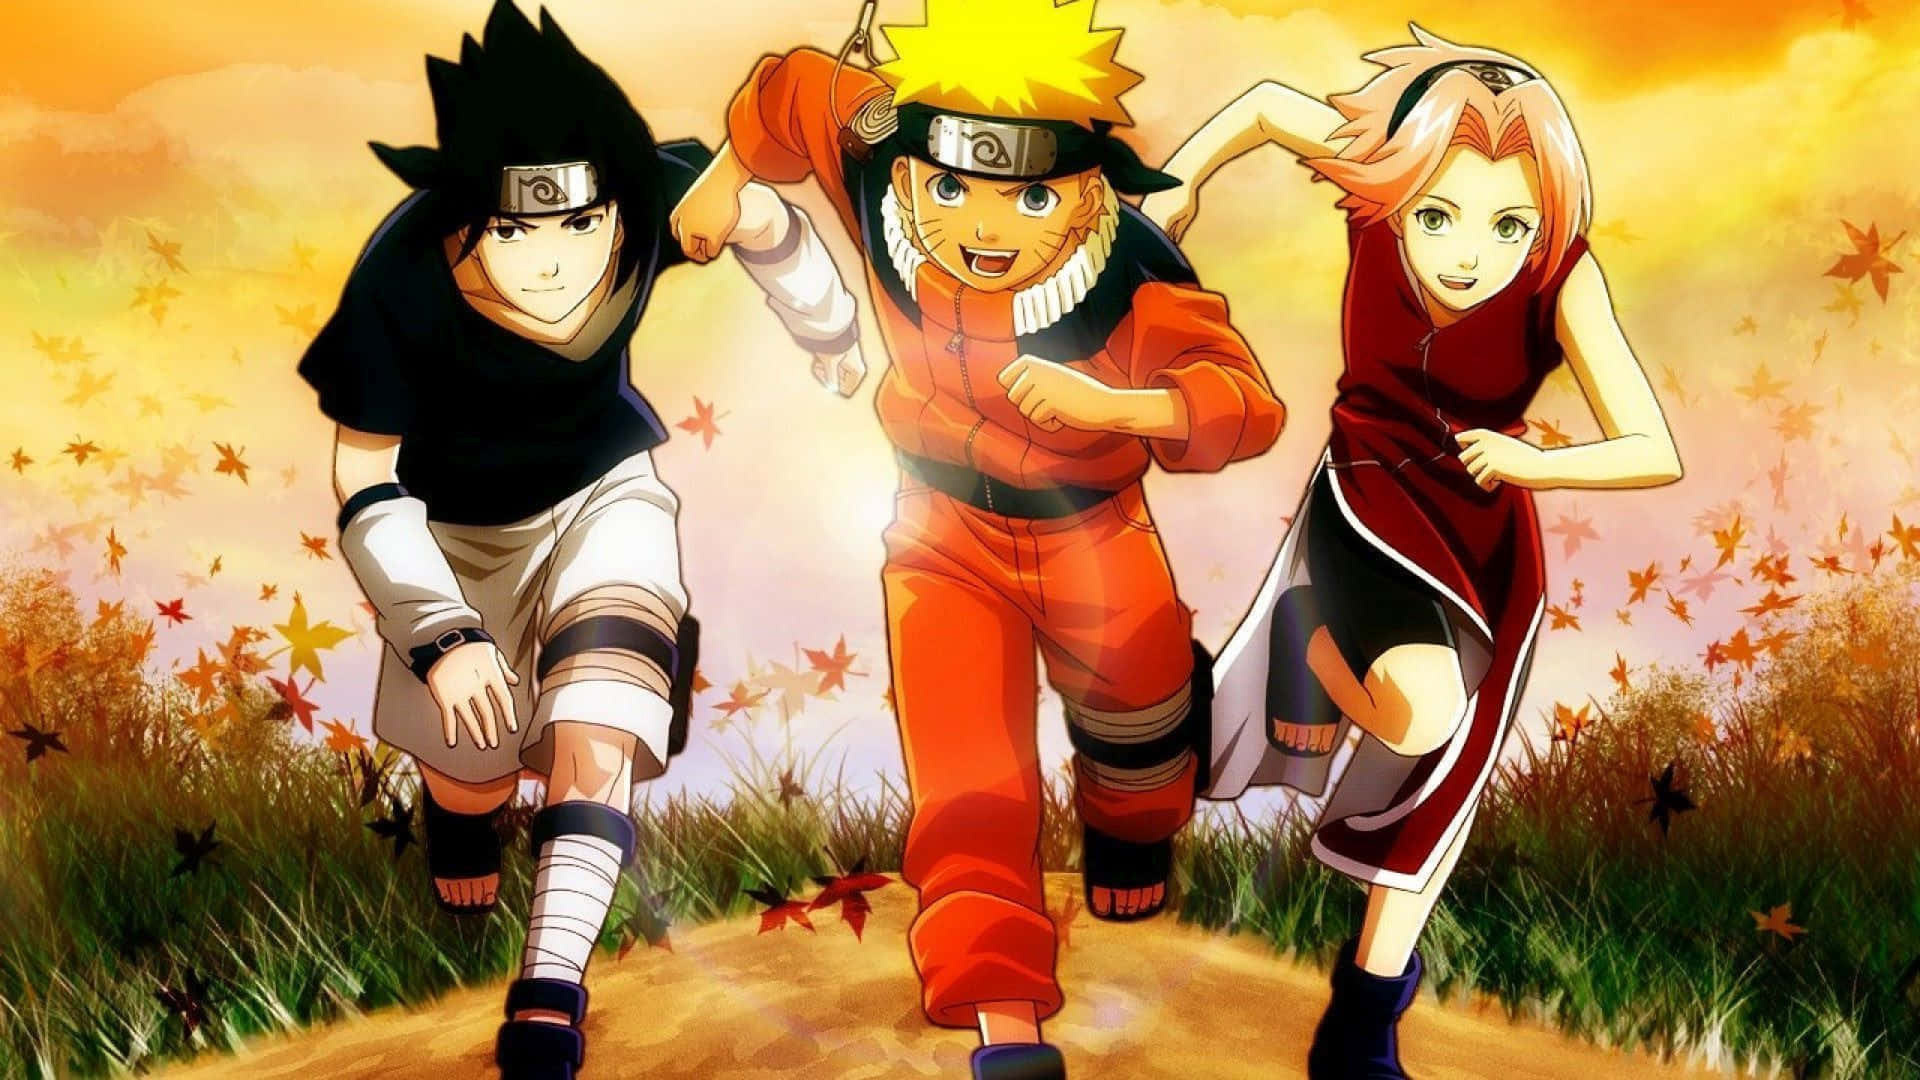 Team 7 Naruto Running In Grass Field Background